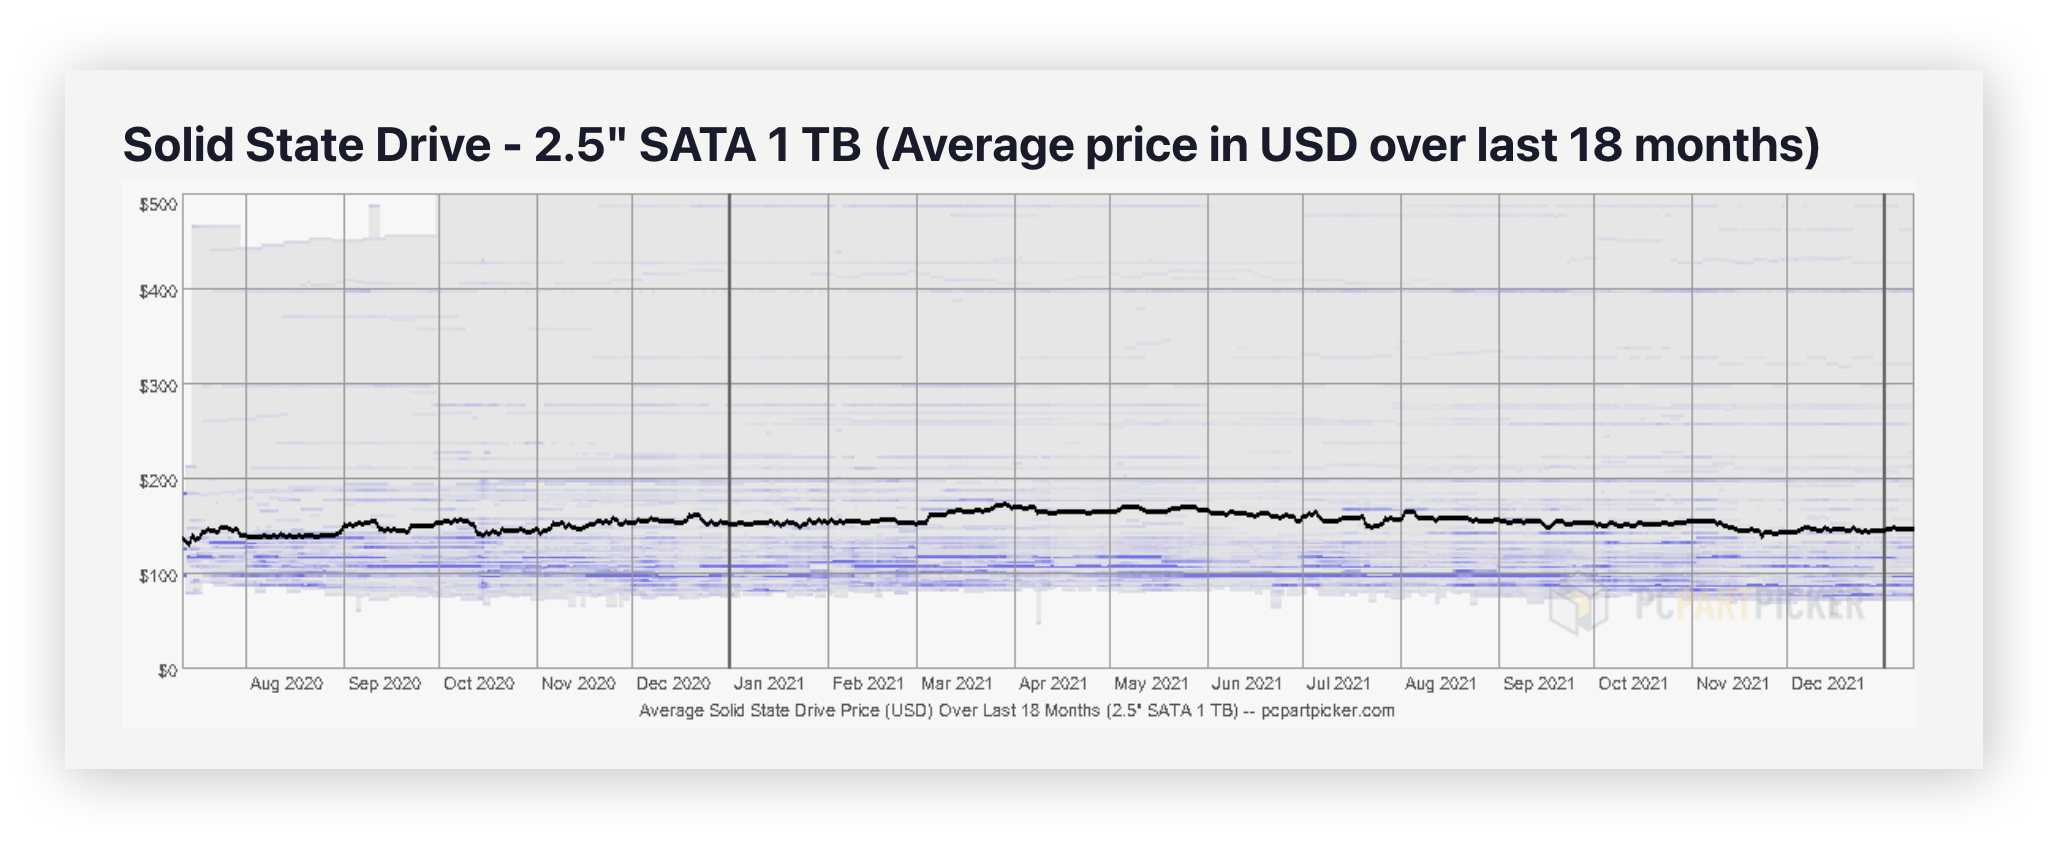 The average price of a 2.5" SATA 1 TB SSD according to PCPartPicker.com